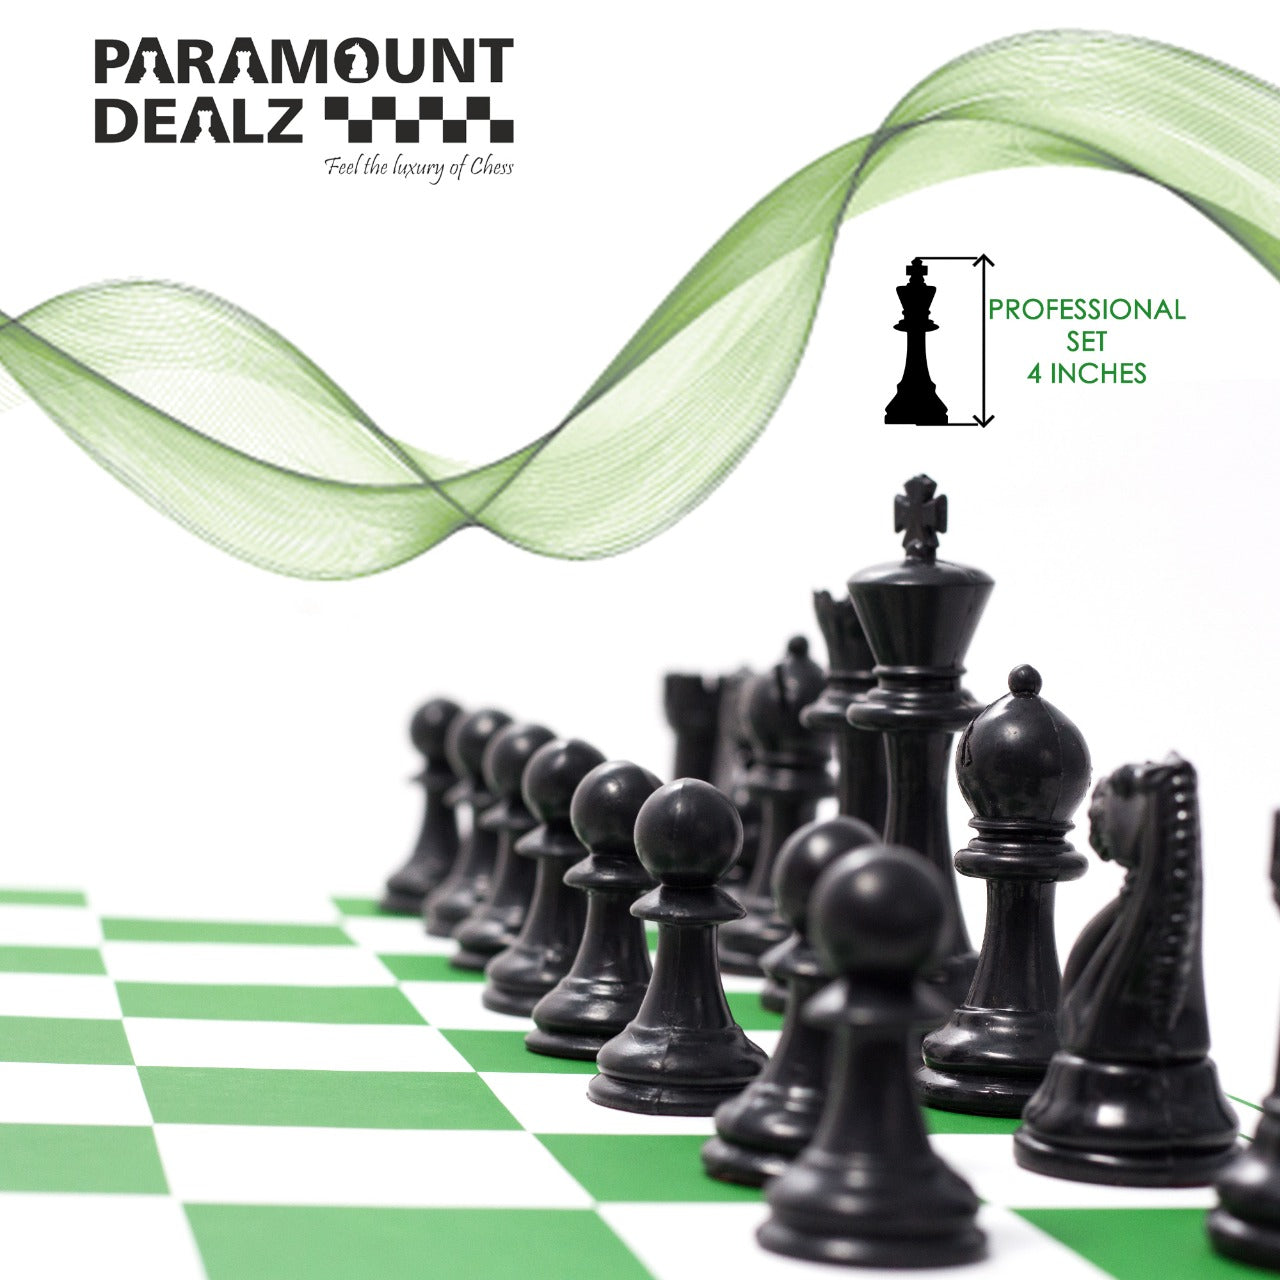 Tournament Chess Set and Chess Bag